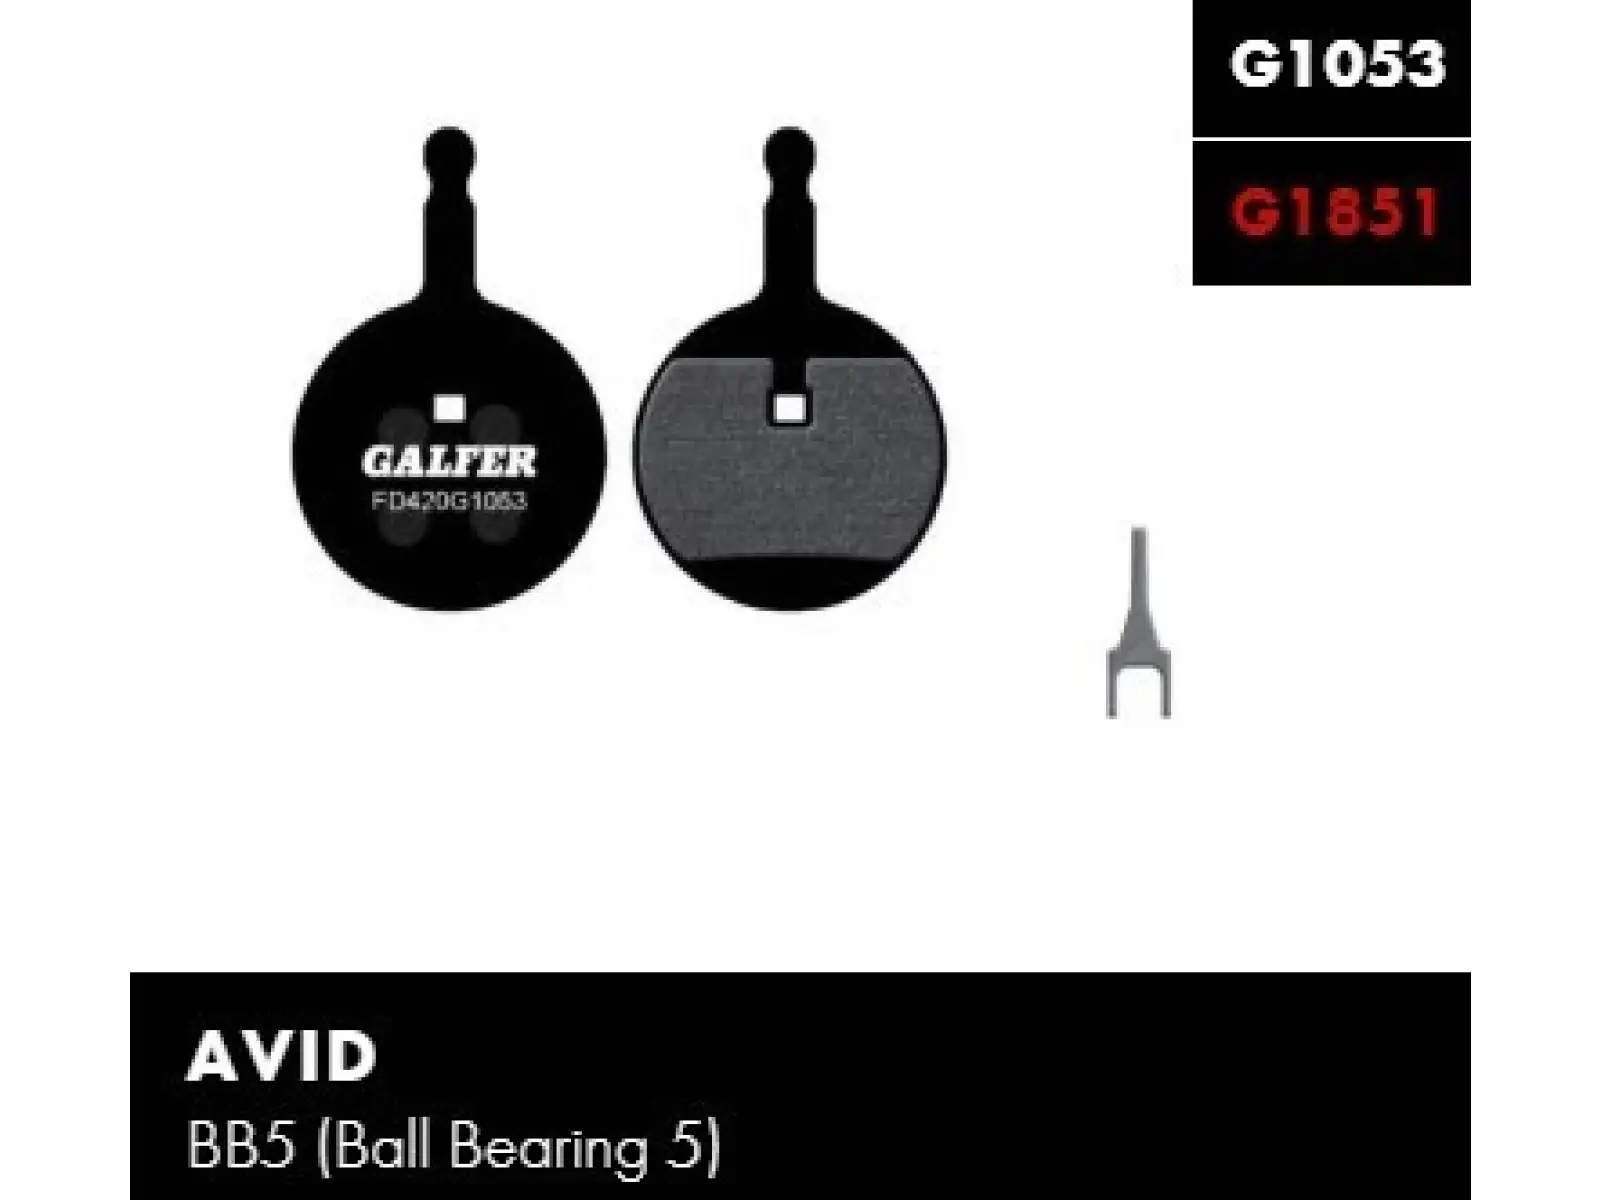 Galfer FD420 Standard G1053 brzdové destičky pro Avid BB5